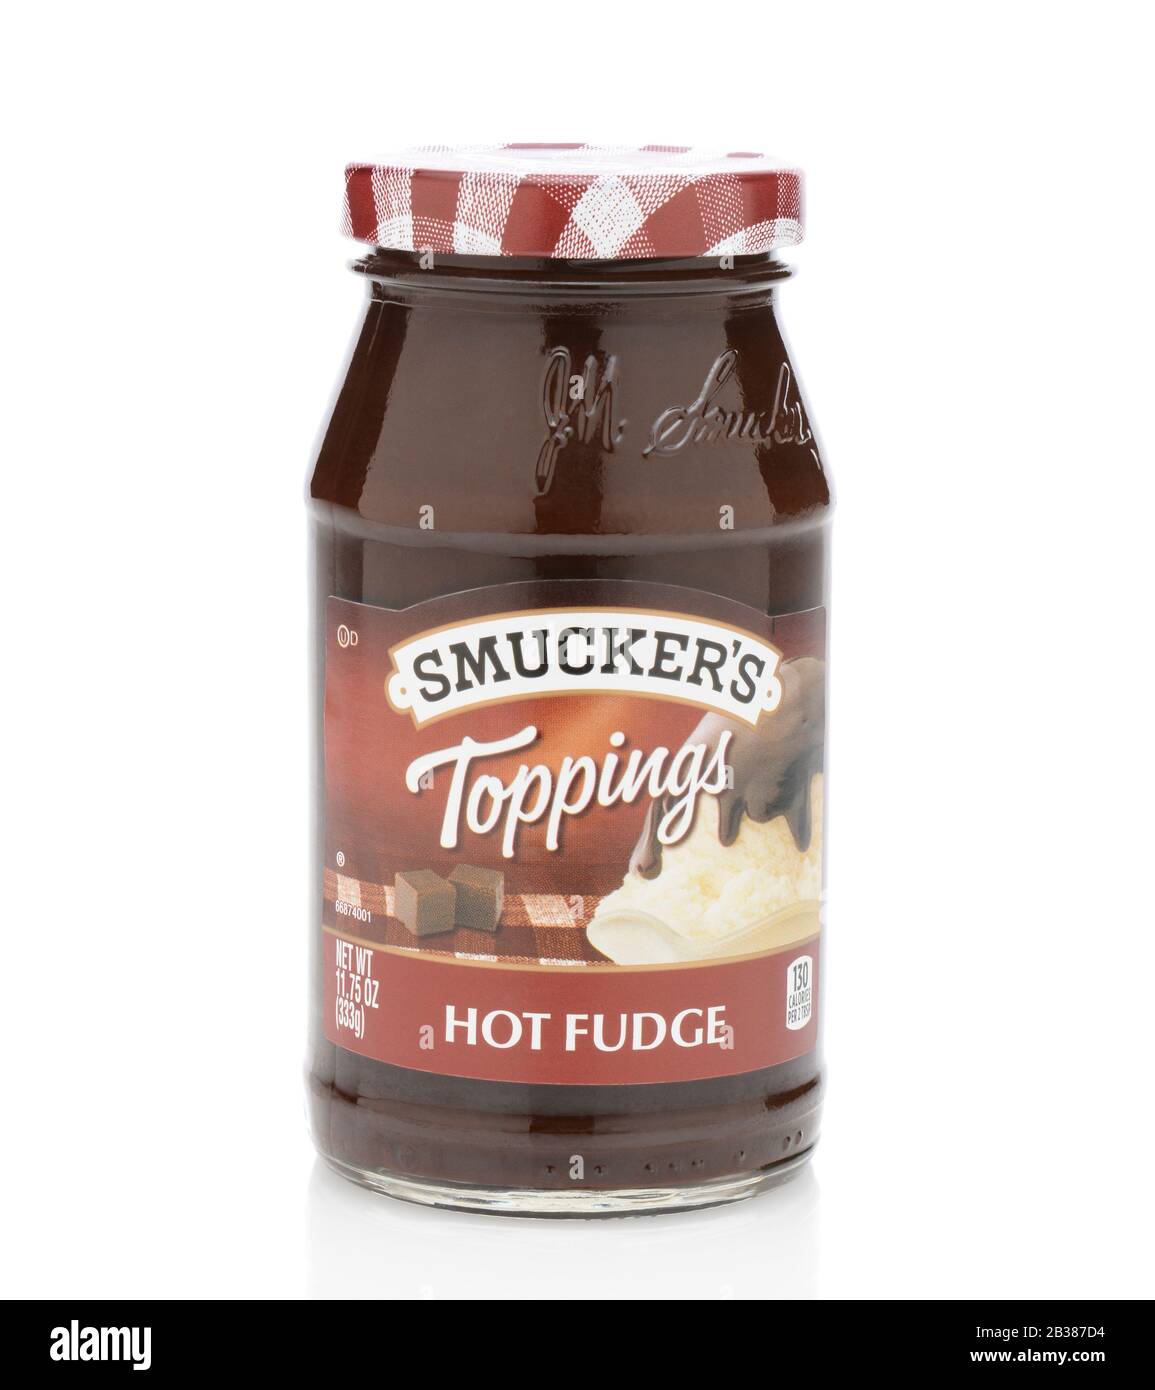 Irvine, CA - 12. SEPTEMBER 2014: Smucker's Hot Fudge Topping. Smucker's wurde im Jahr 1897 gegründet und produziert Obstaufstriche, Eiscreme, Getränke, sh Stockfoto